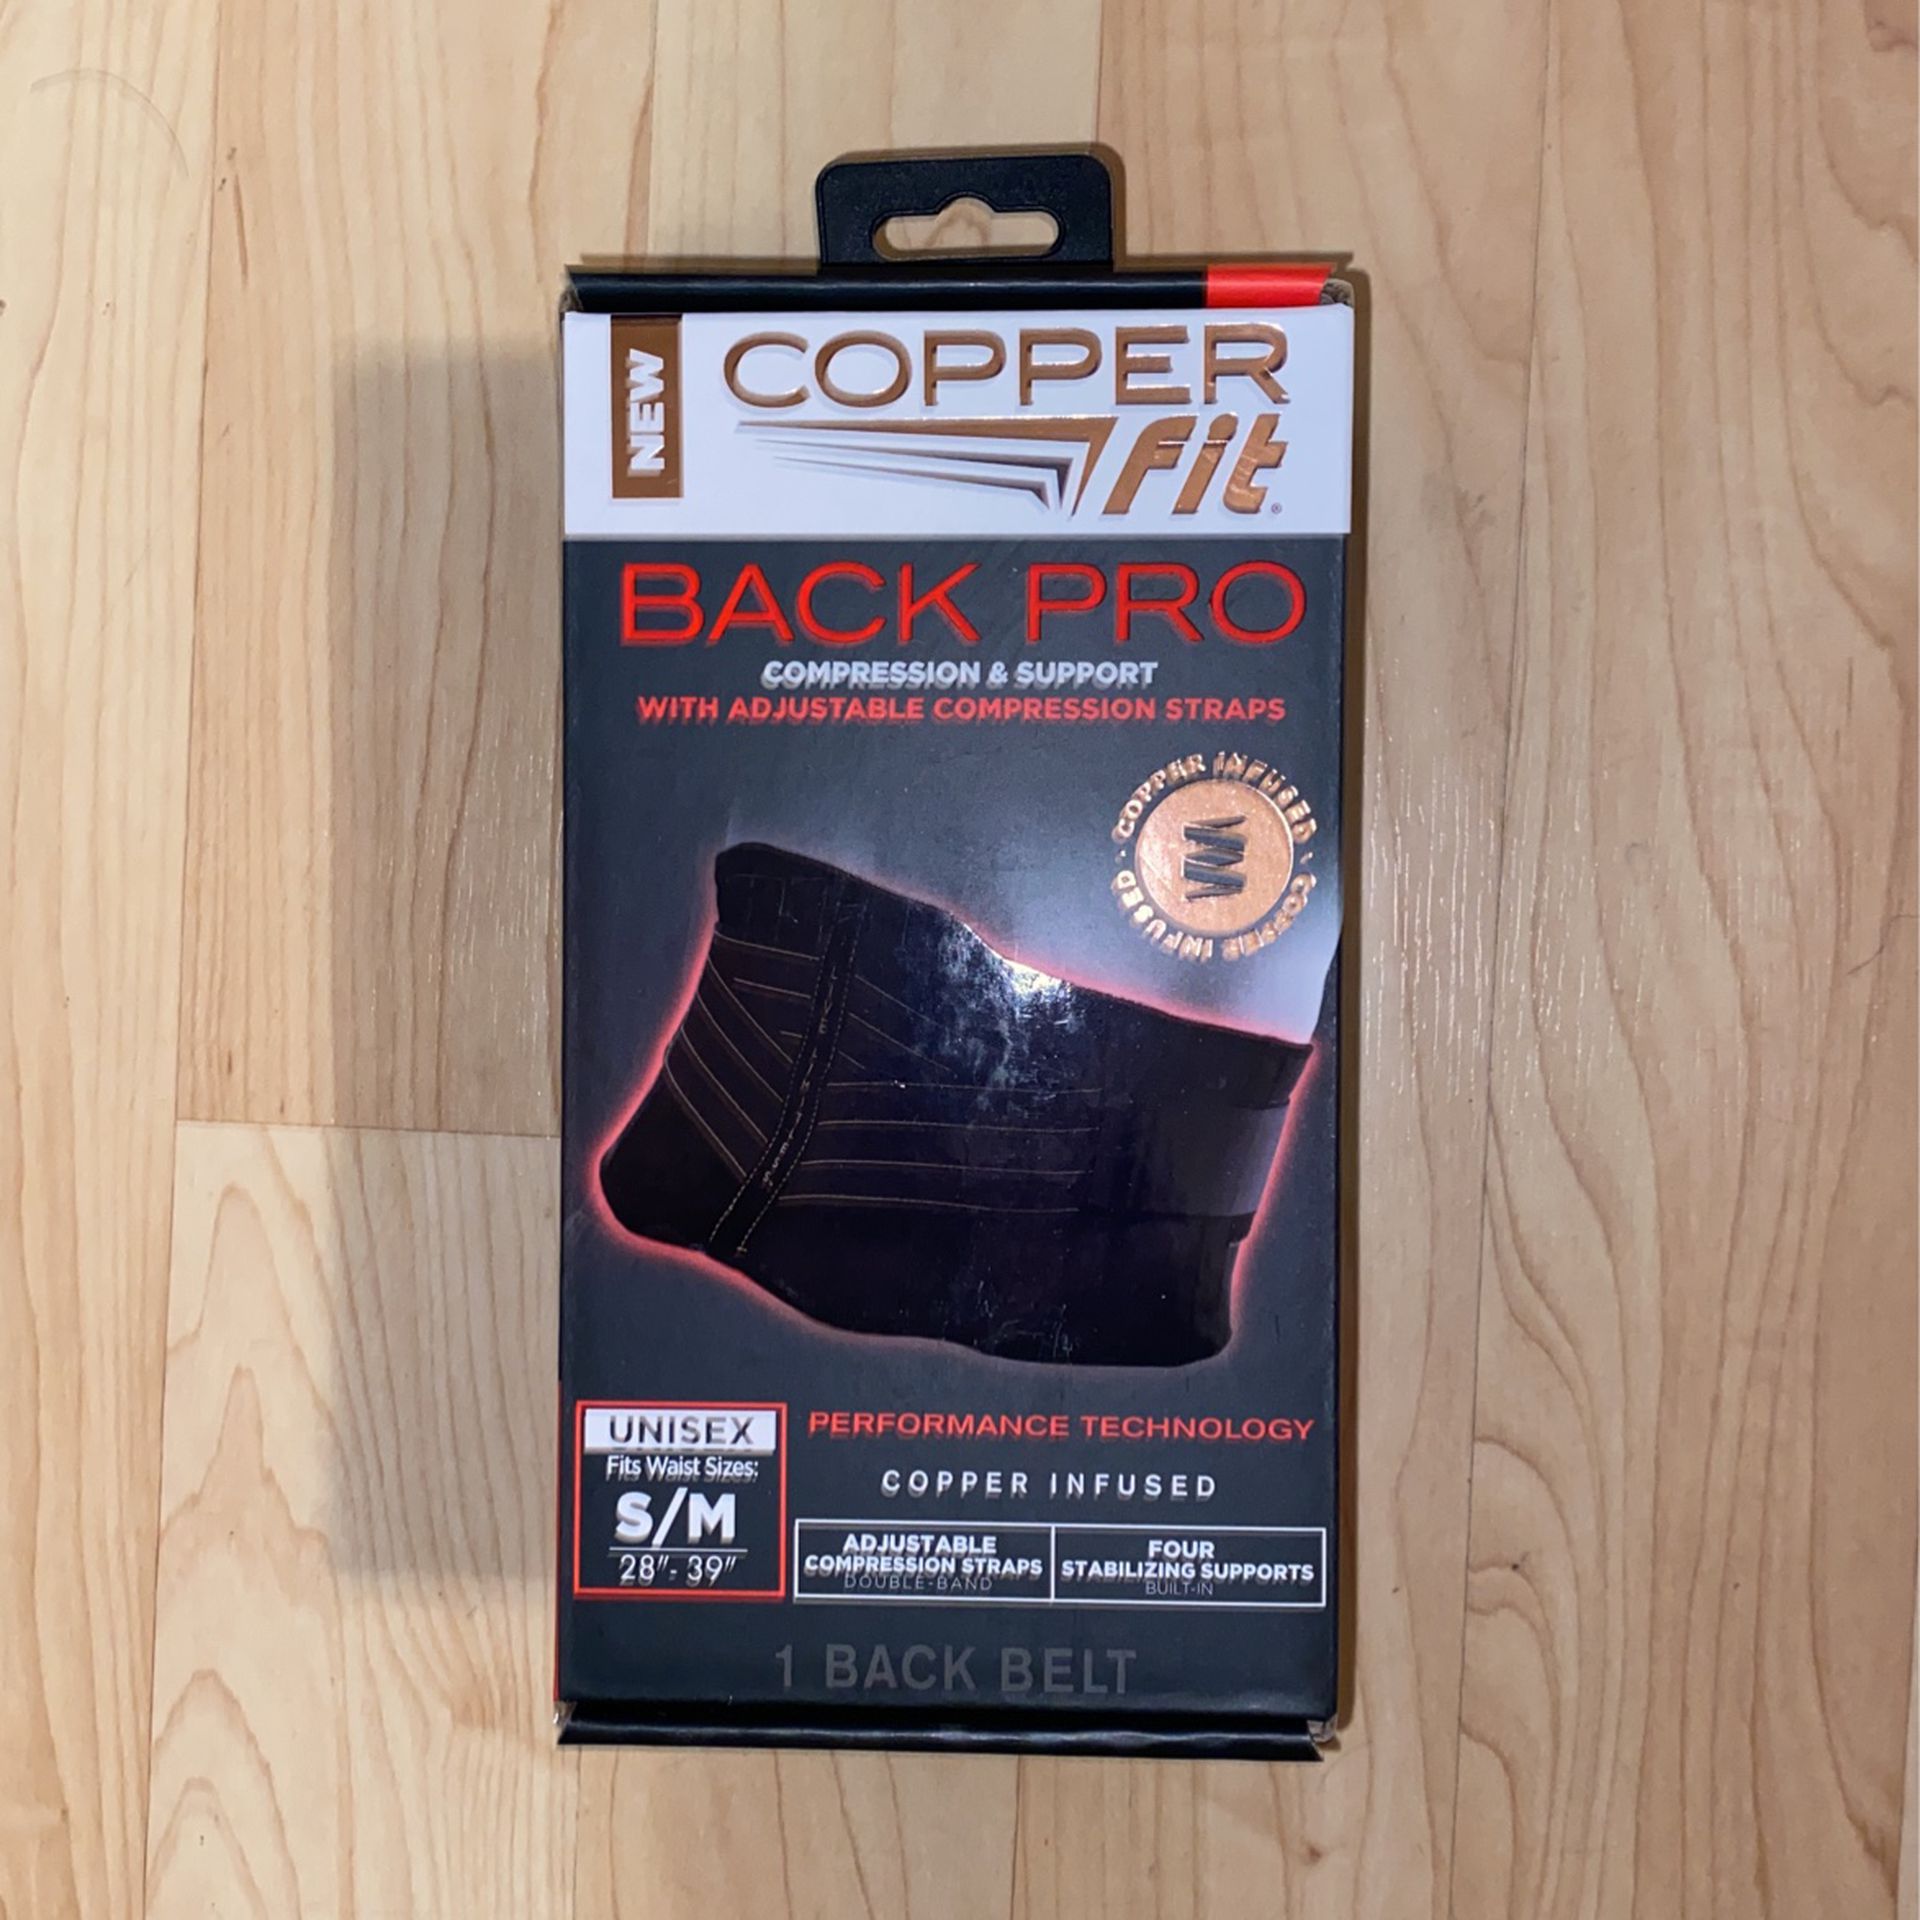 $12 New! Copper Fit Back Pro Unisex S/M 28” - 39”